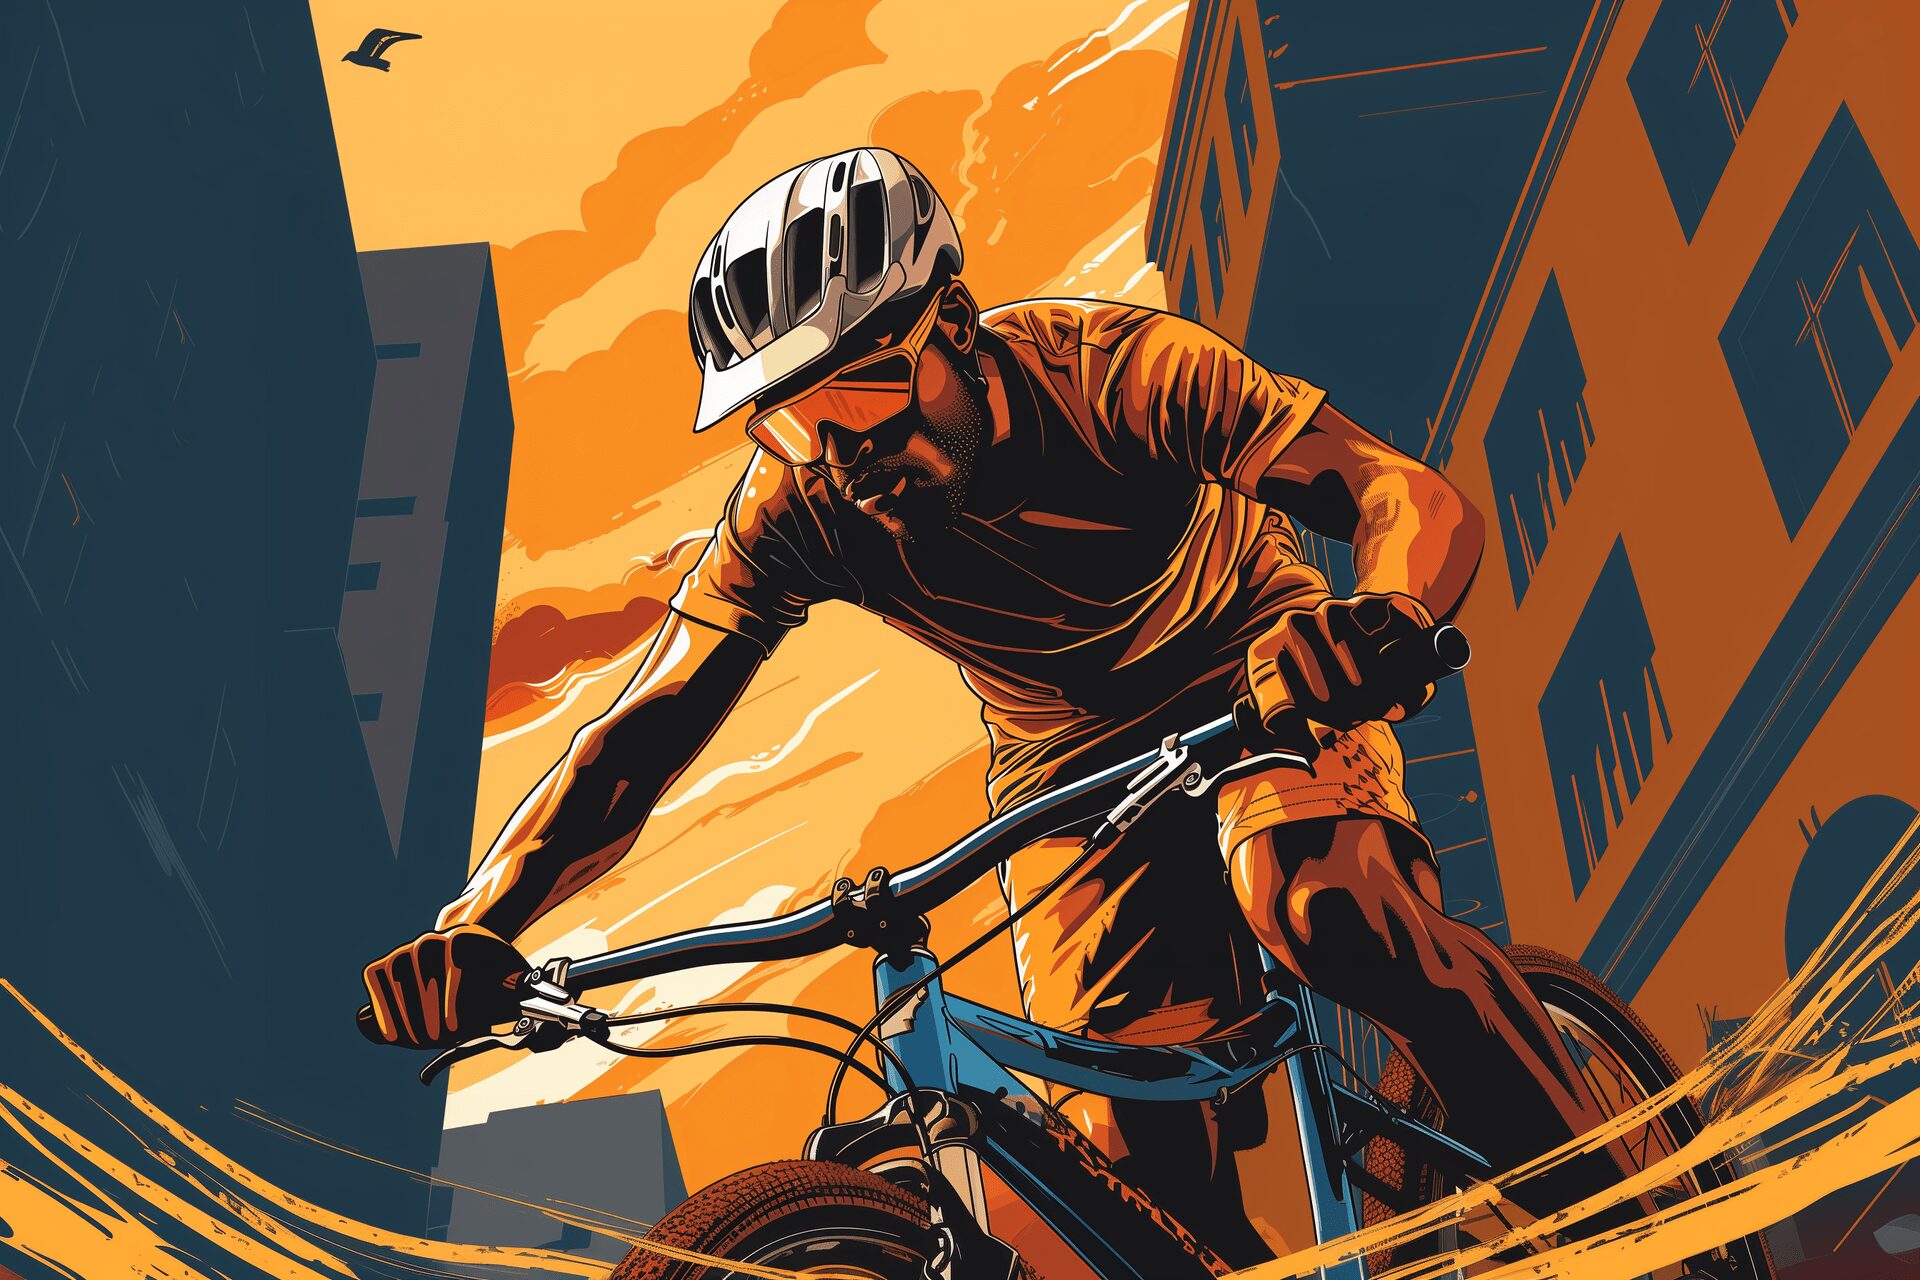 An urban cyclist